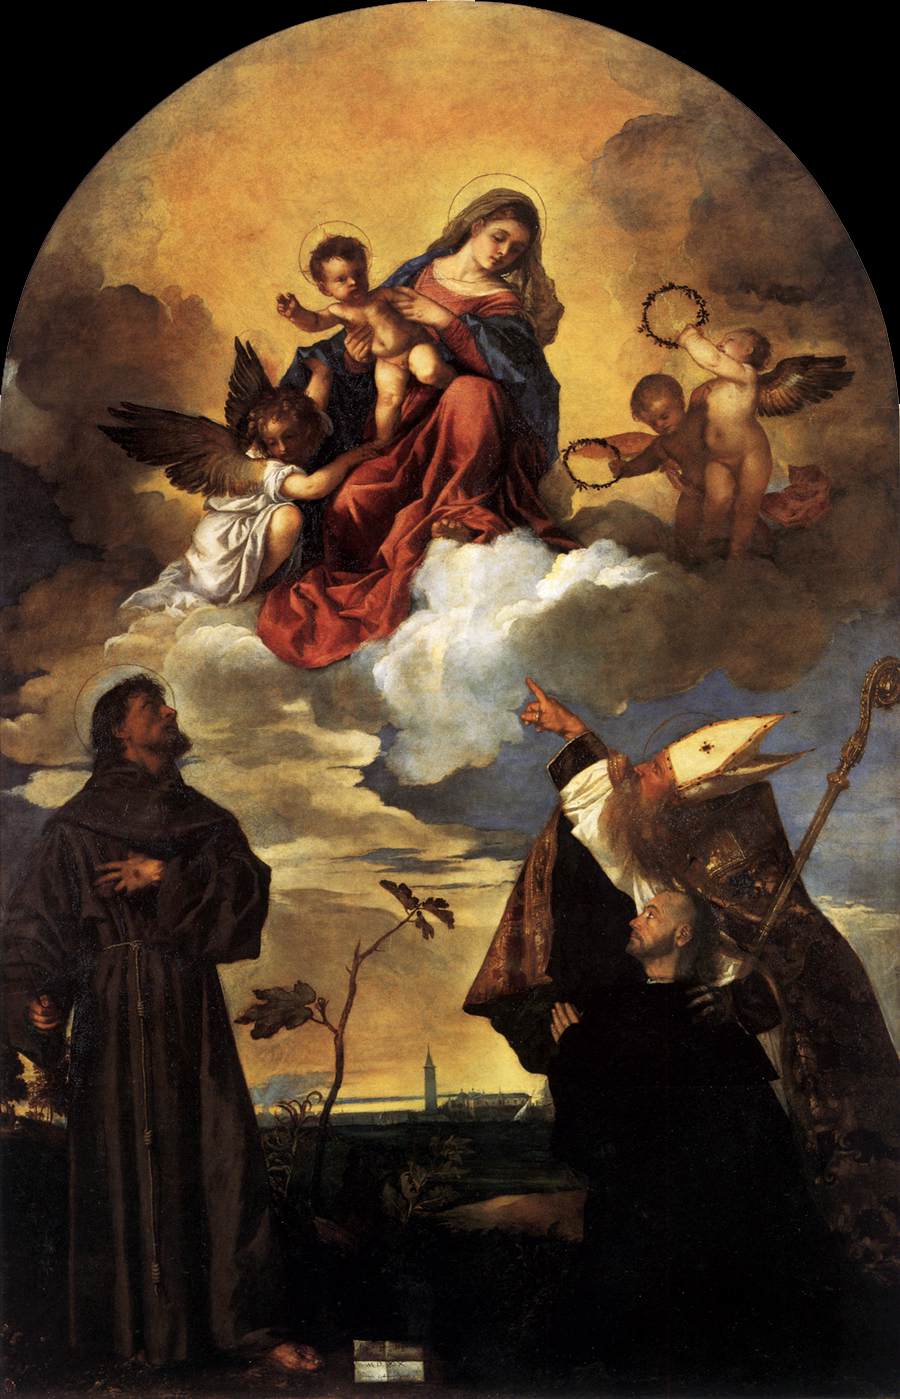 Jungfruen i ära med barnet Jesus Kristus och San Francisco och Alvise med givaren